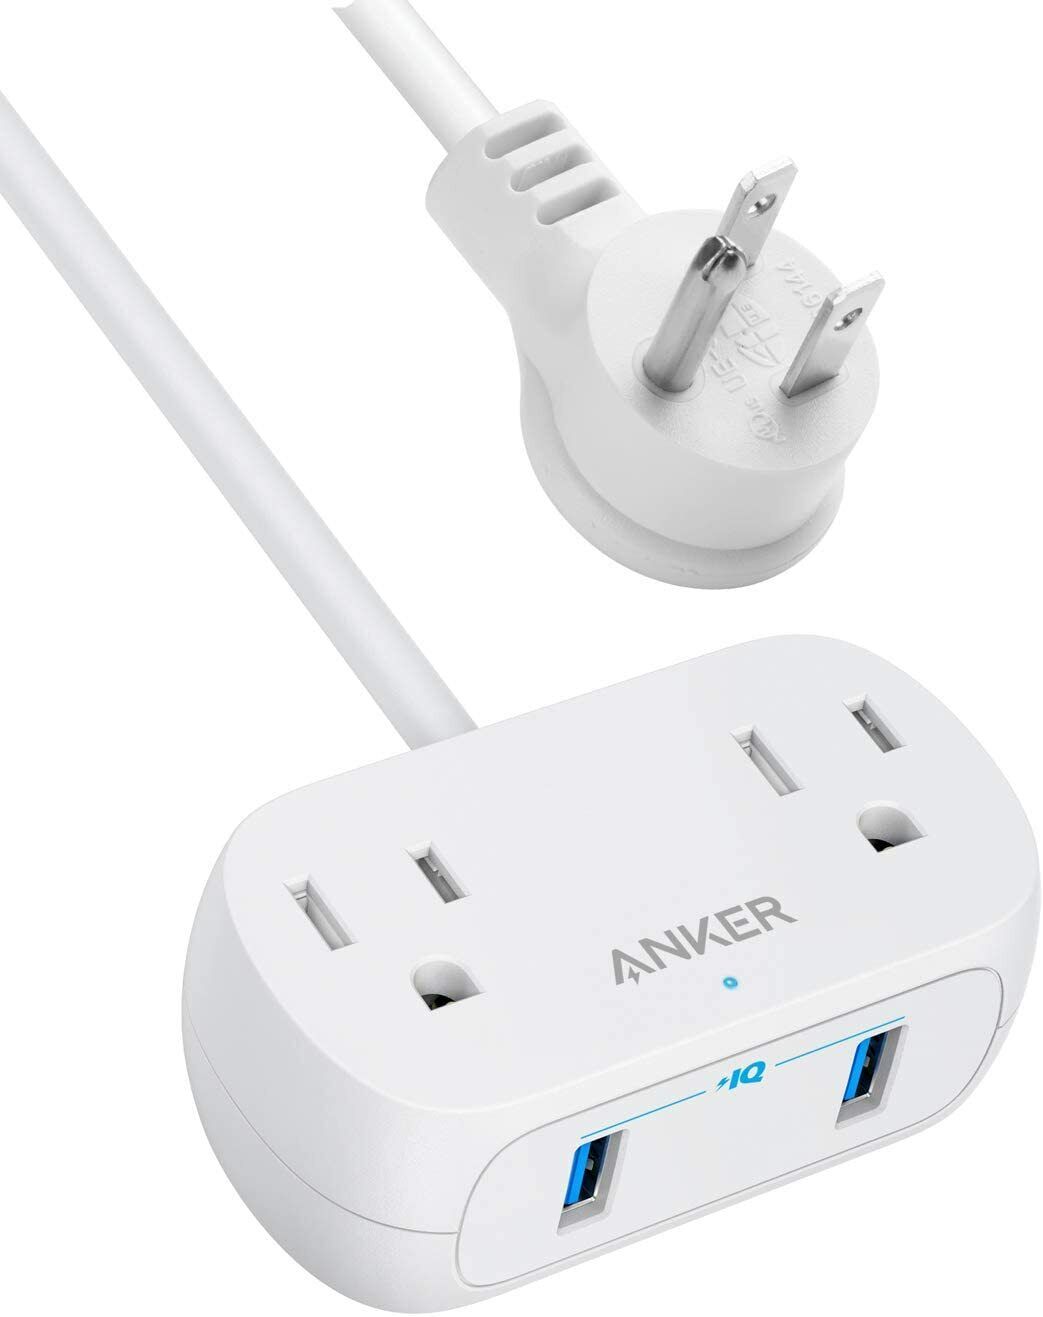 Anker Power Strip 2 Outlets 2 USB Charging Port 8ft Cord Desktop Travel Home 194644045777 | eBay